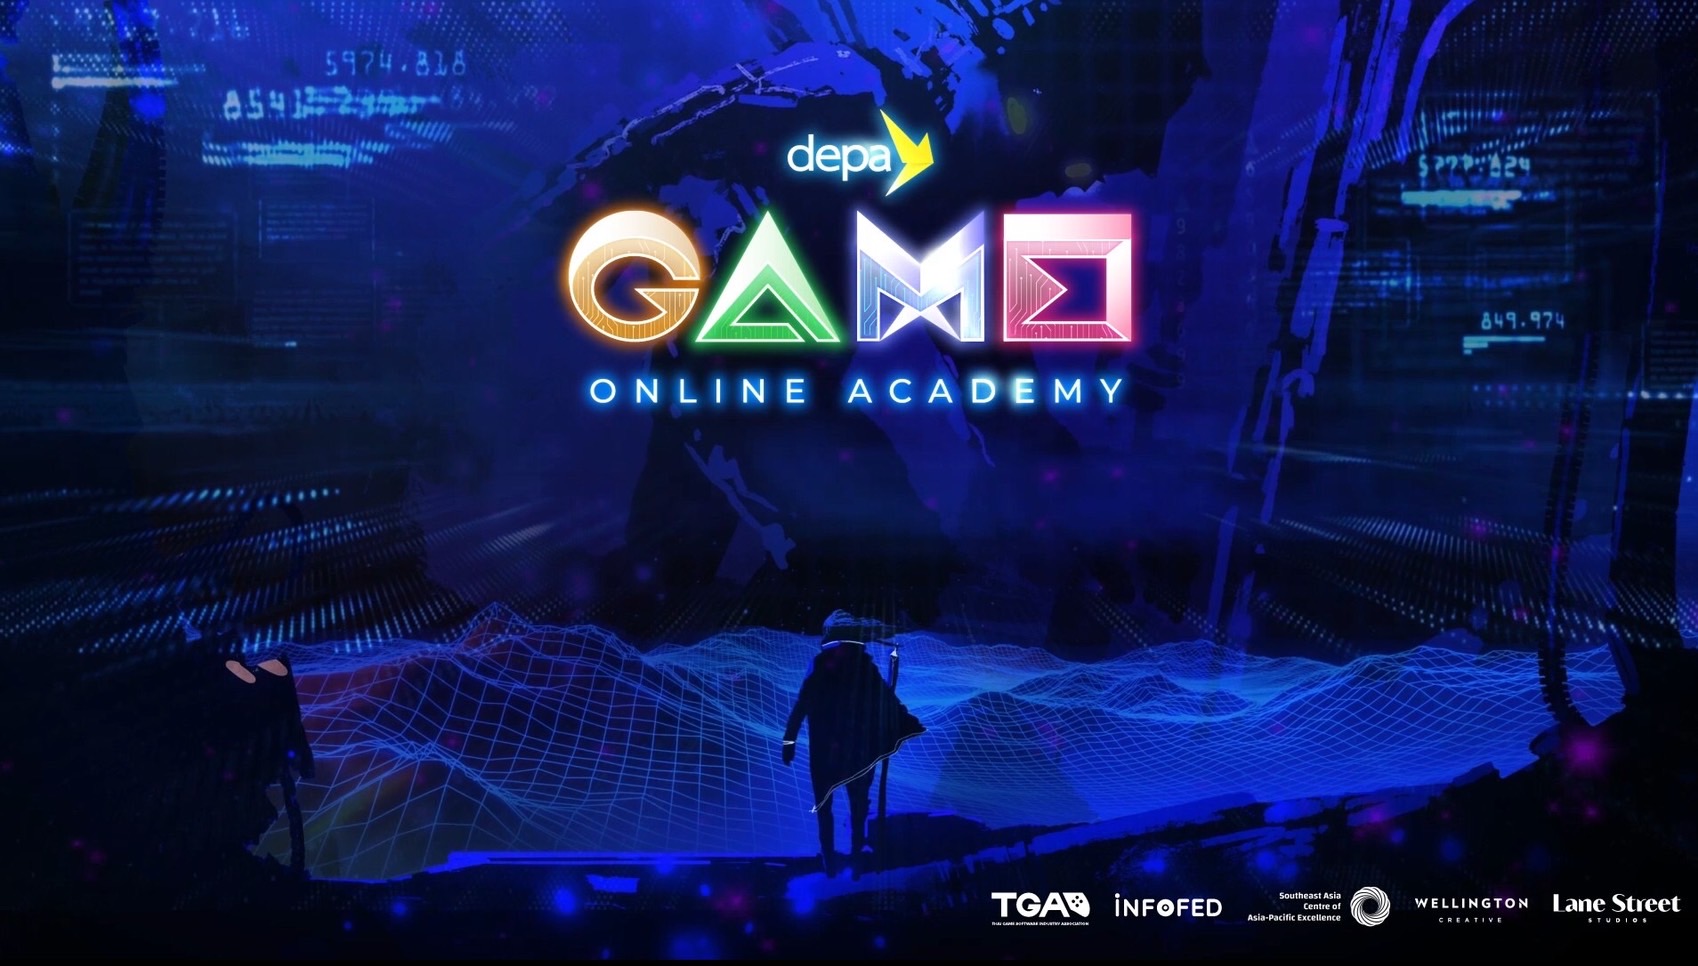 ดีป้า จับมือพันธมิตรเปิดตัว depa Game Online Academy สร้างบุคลากรเกมผ่านหลักสูตรออนไลน์ หนุนอุตสาหกรรมเกมไทยก้าวไกลระดับโลก